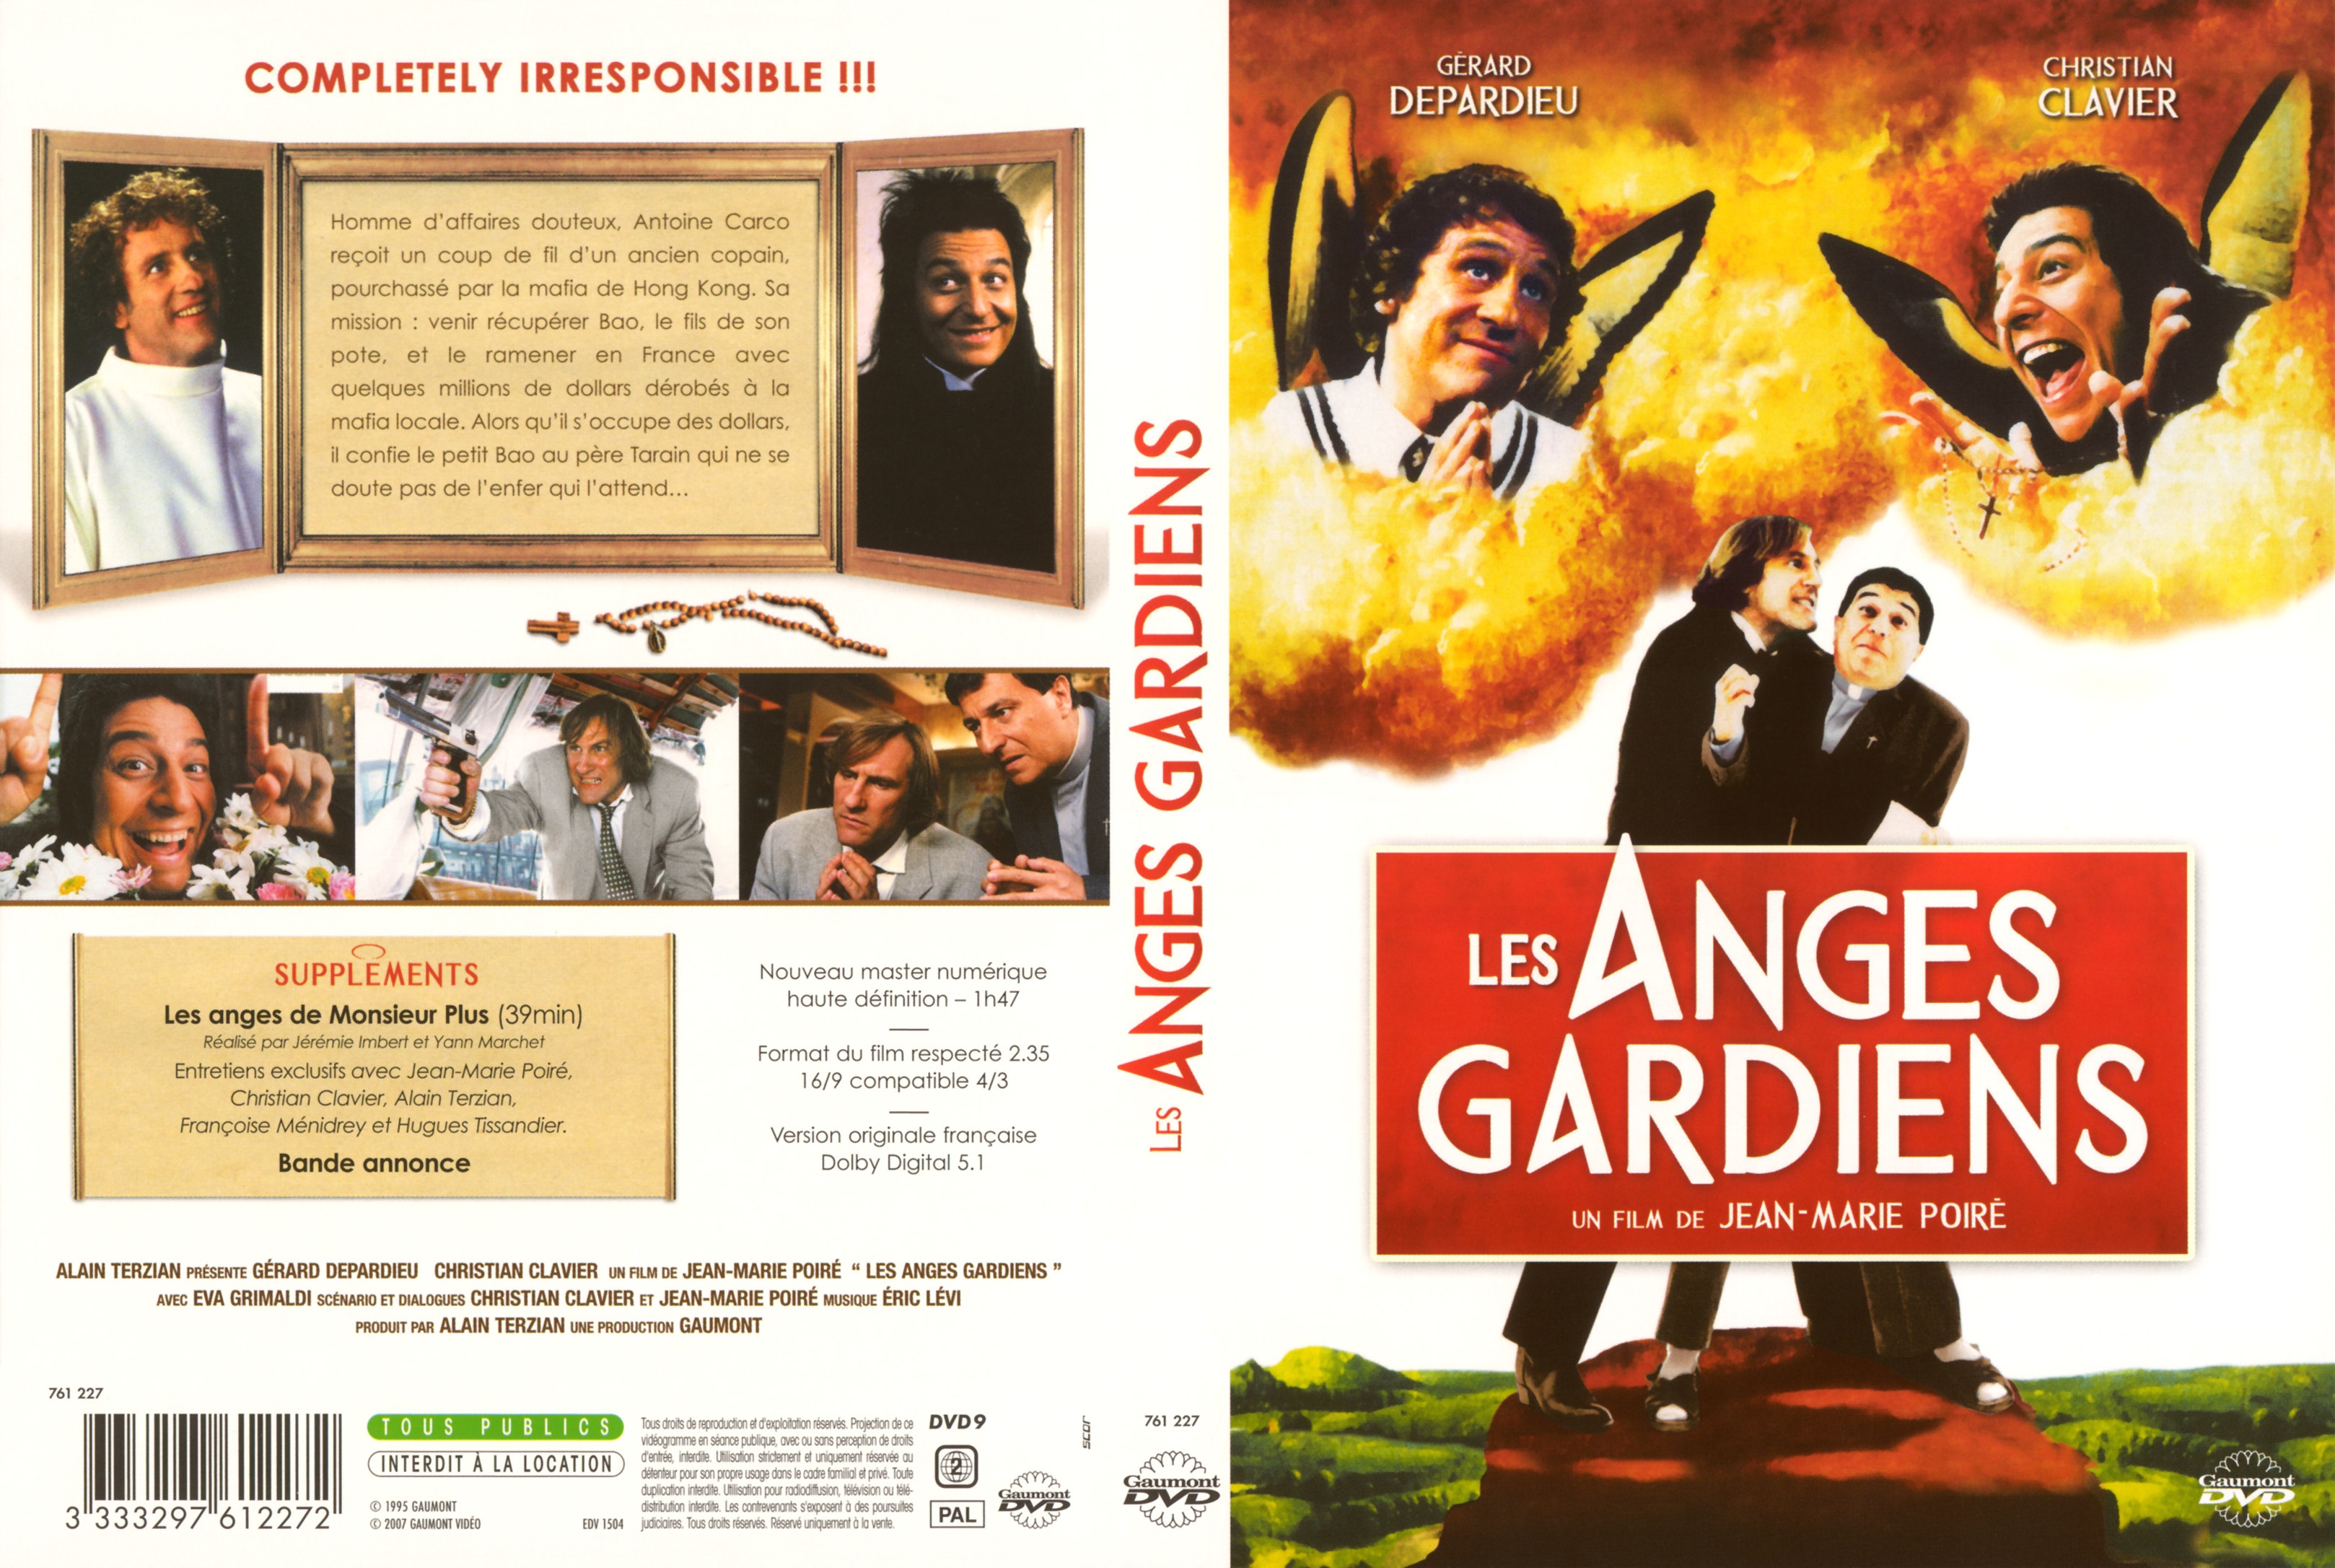 Jaquette DVD Les anges gardiens v2